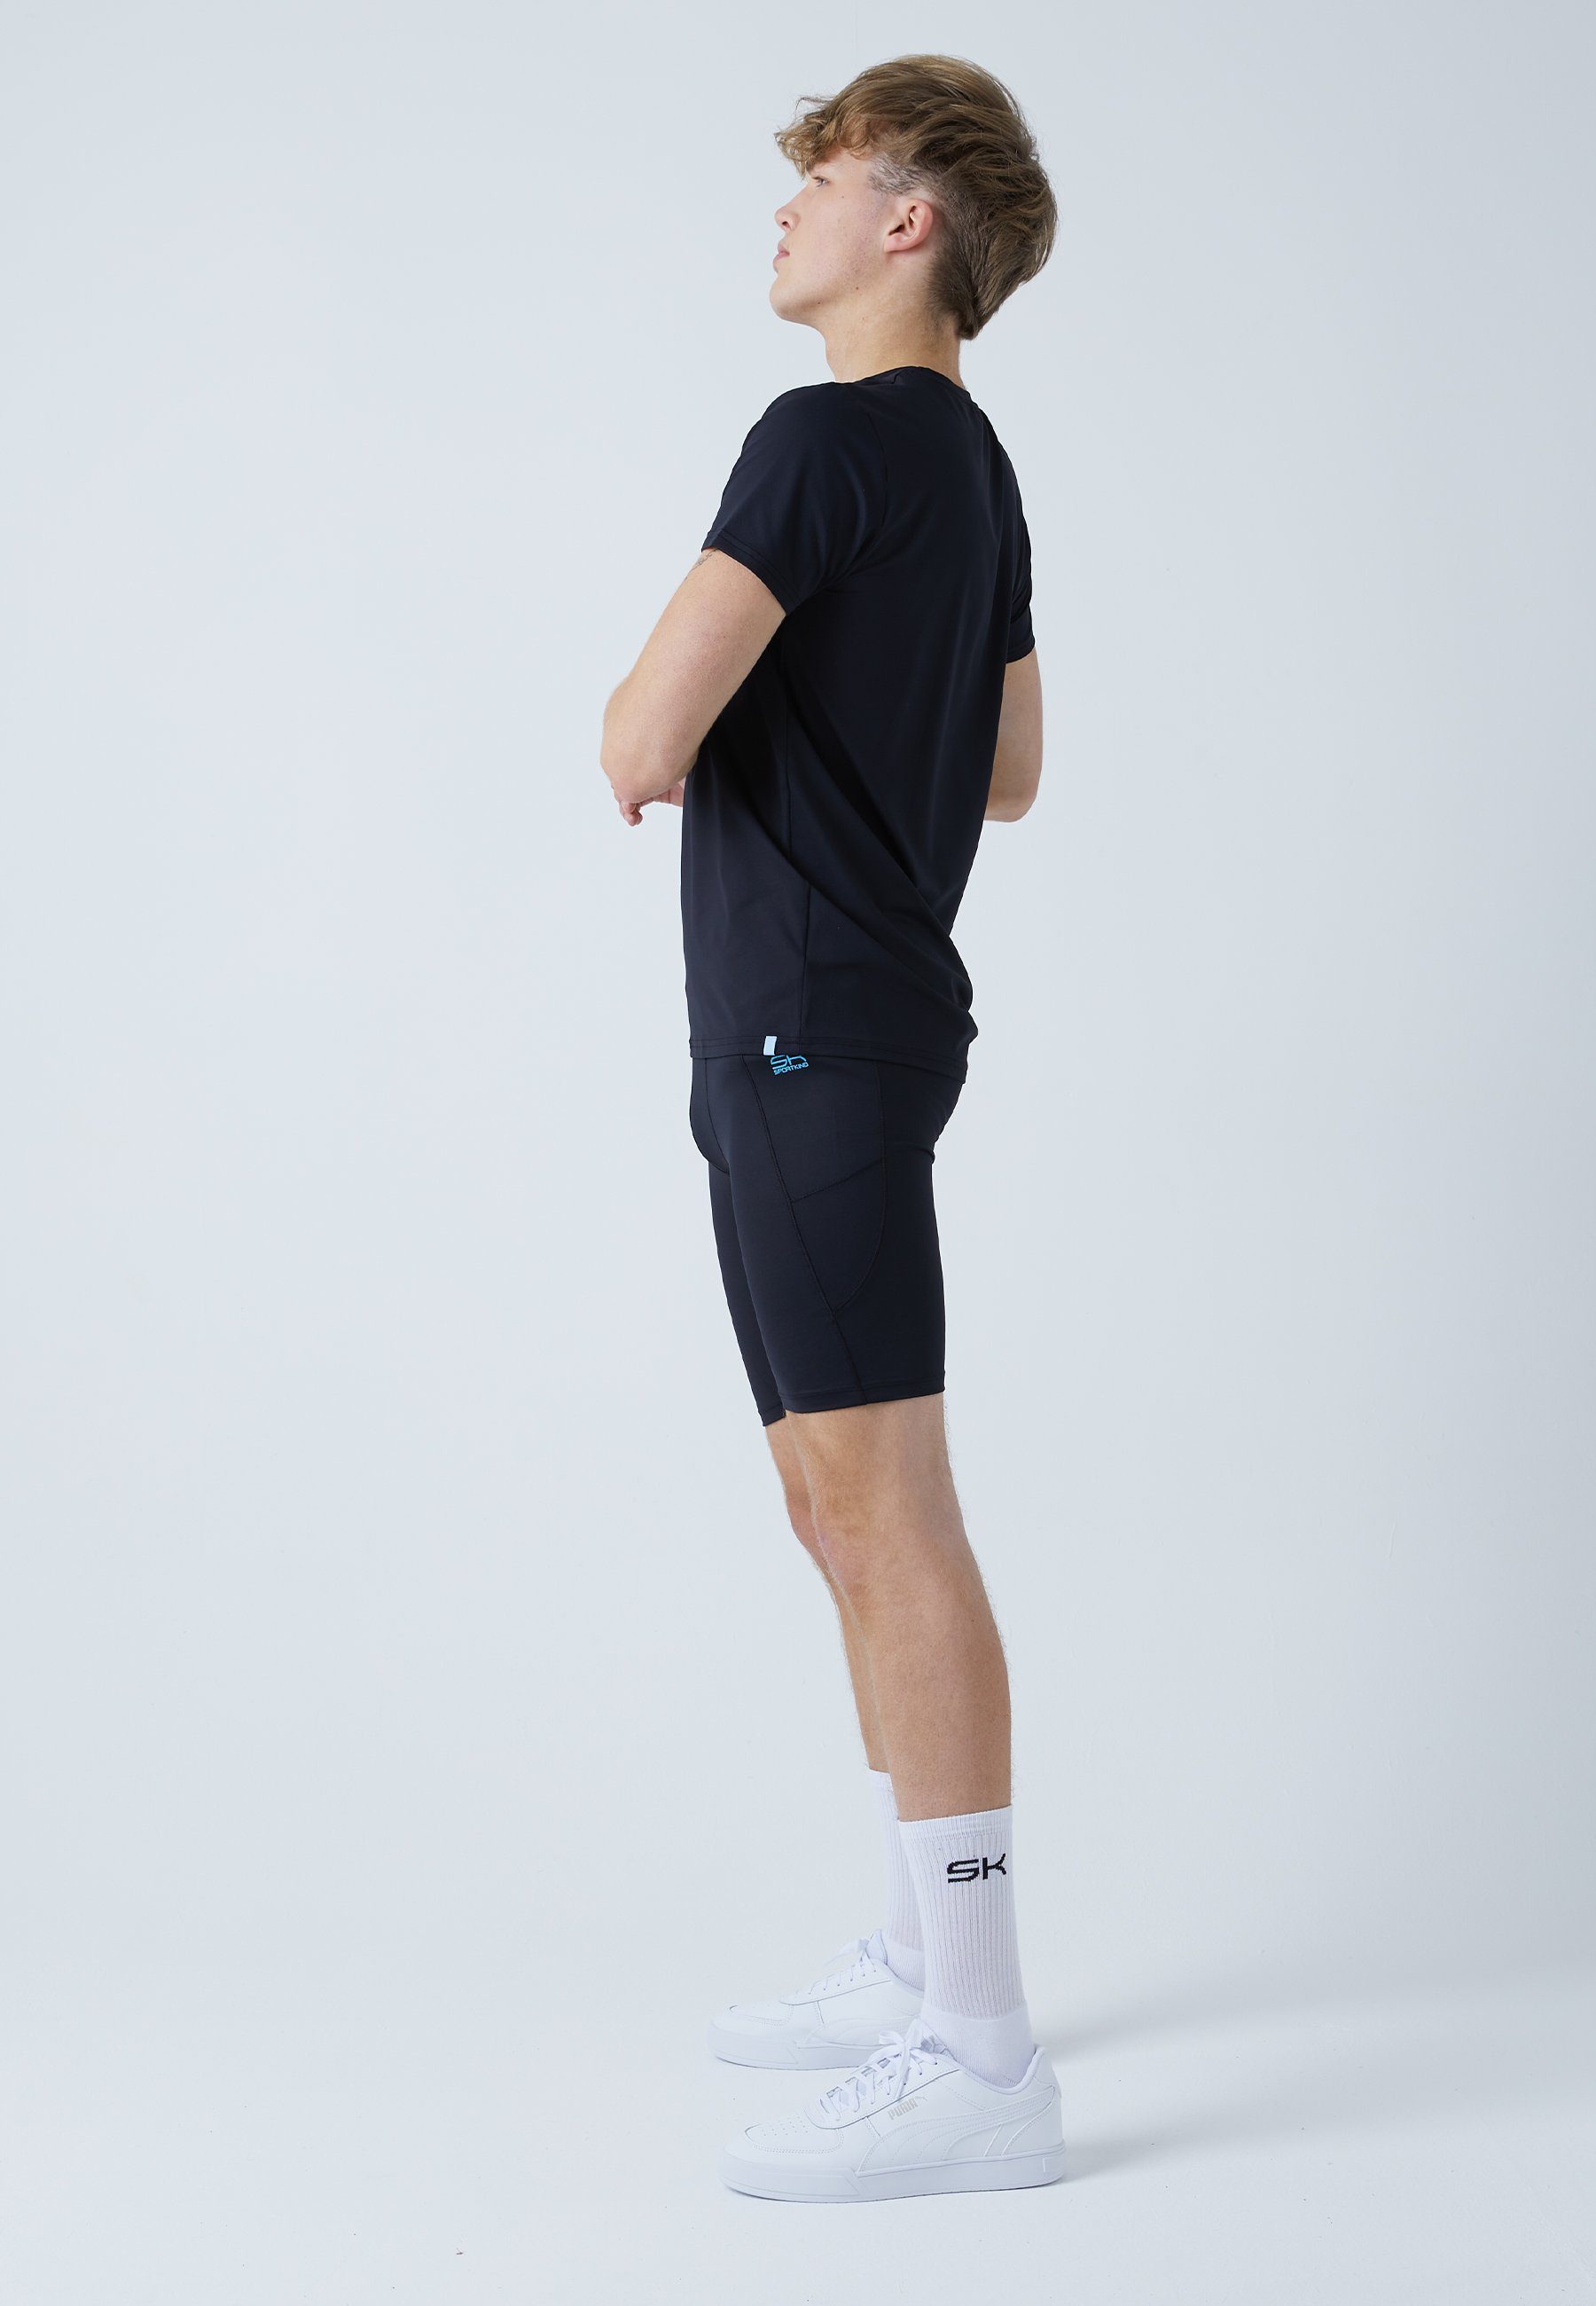 Tennis Radlerhose & Herren schwarz Jungen SPORTKIND Funktionsshorts mit Short Taschen Tights